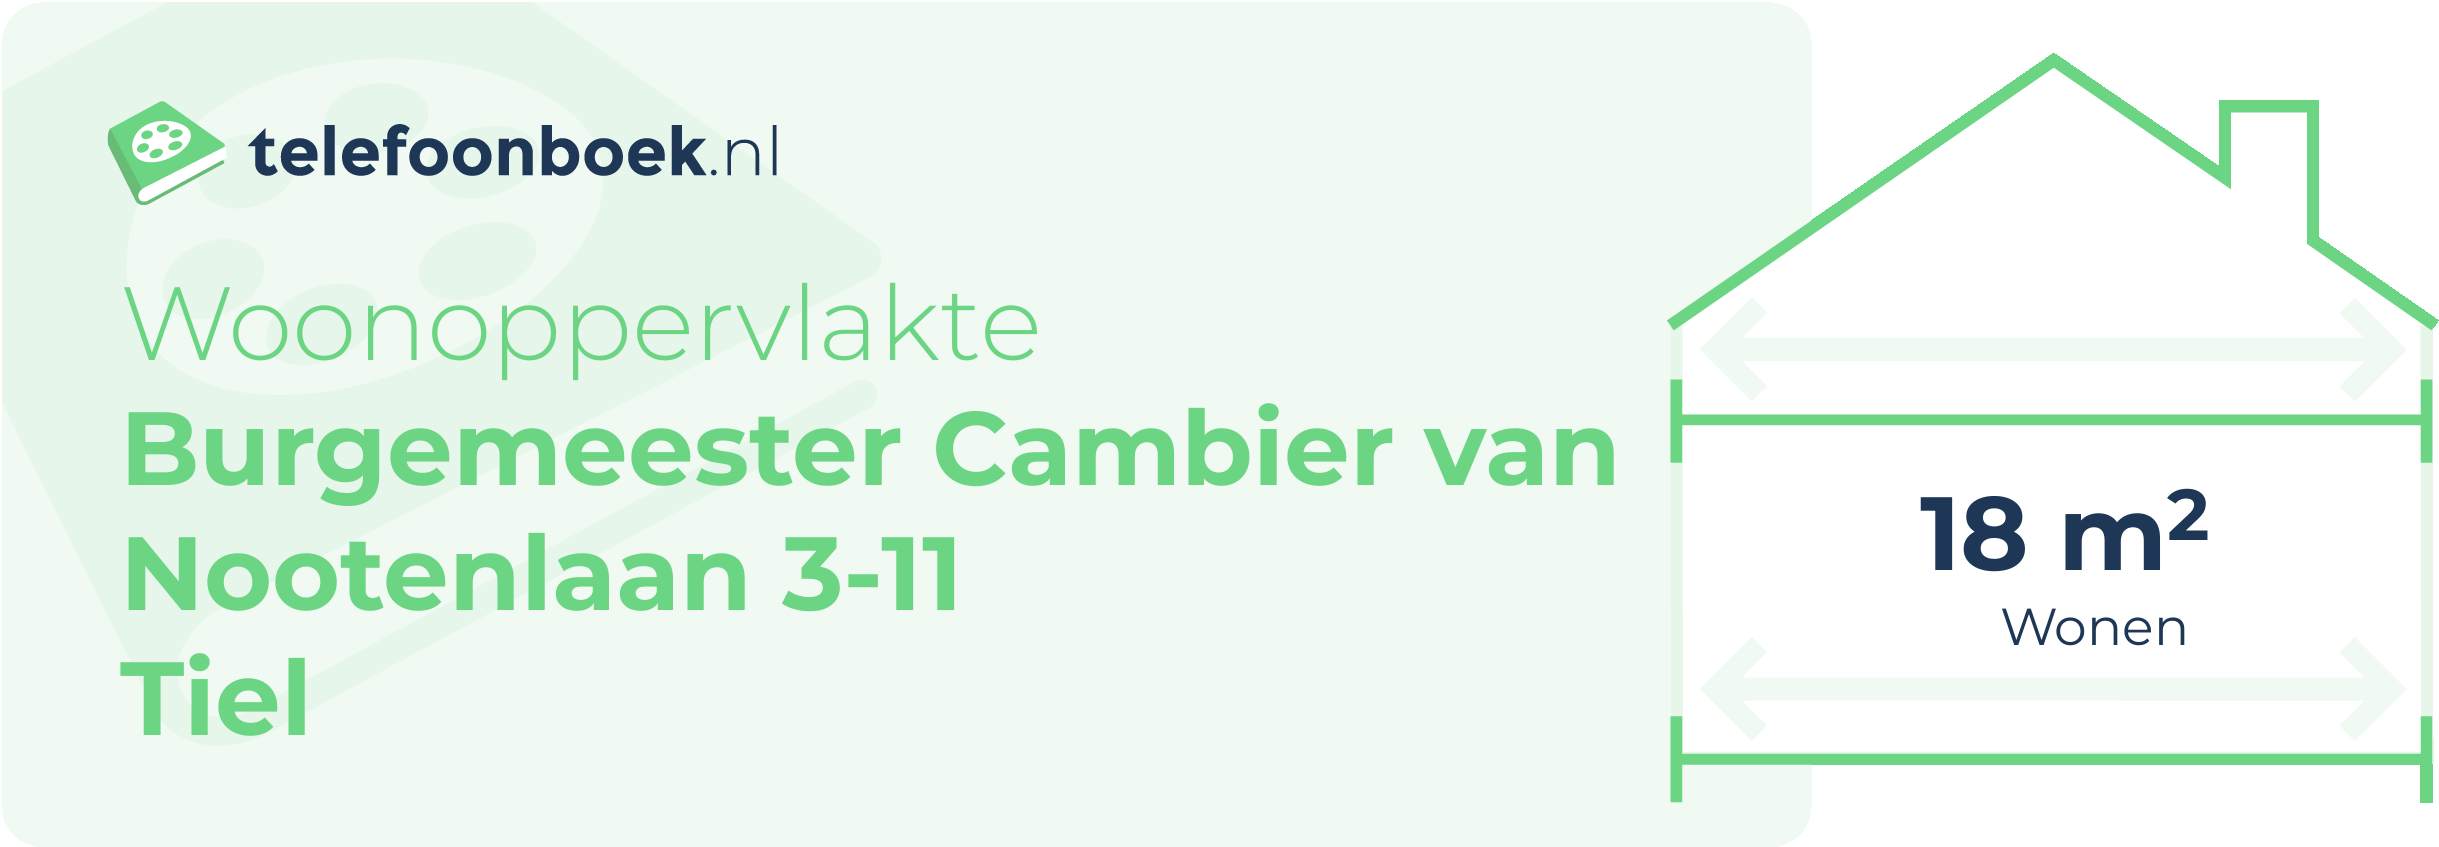 Woonoppervlakte Burgemeester Cambier Van Nootenlaan 3-11 Tiel